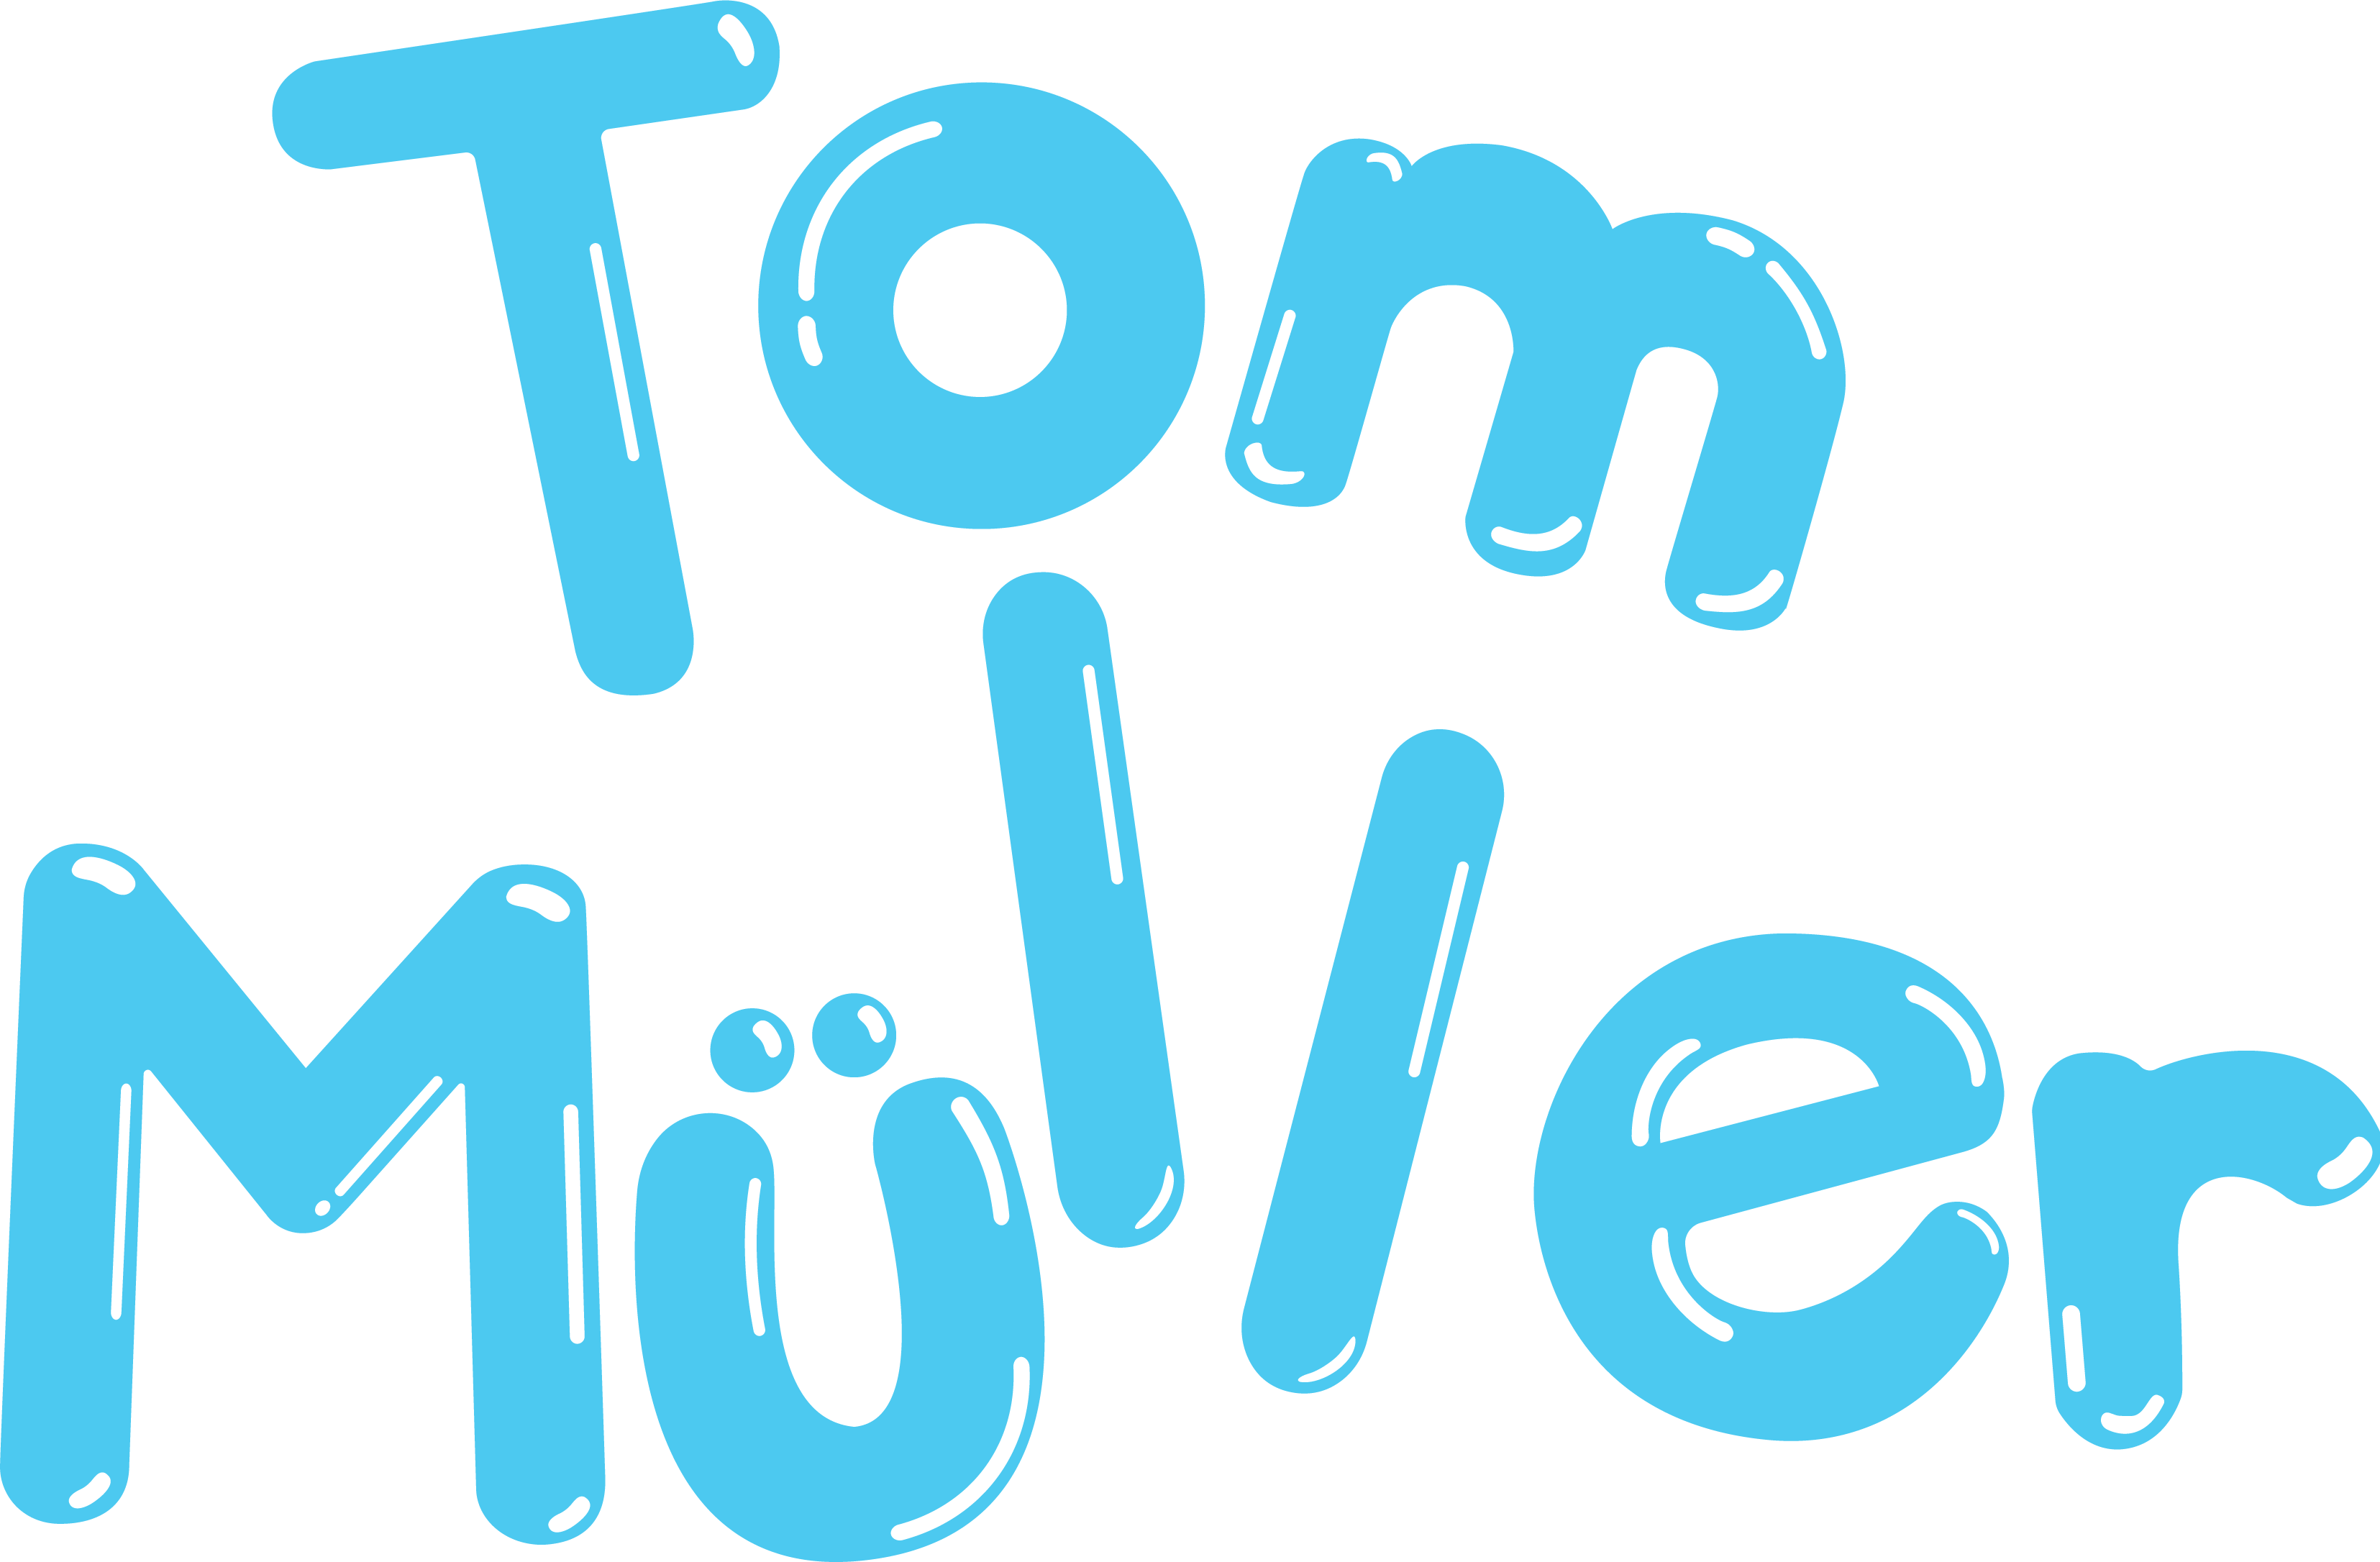 Tom Muller